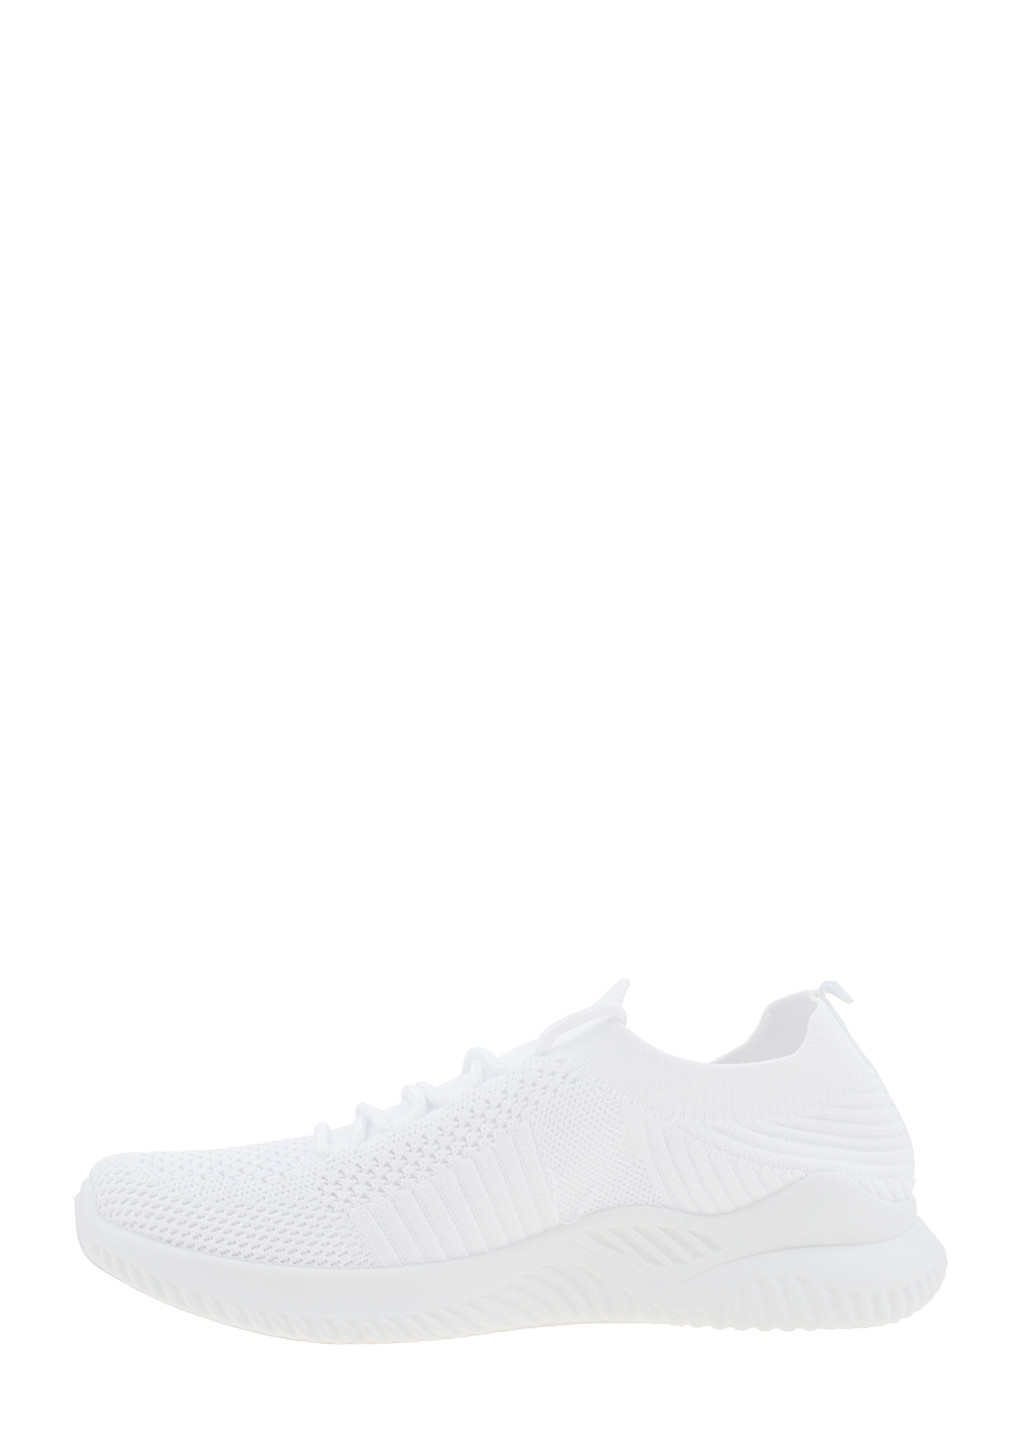 Белые демисезонные кроссовки bll-25-2 white BDDS